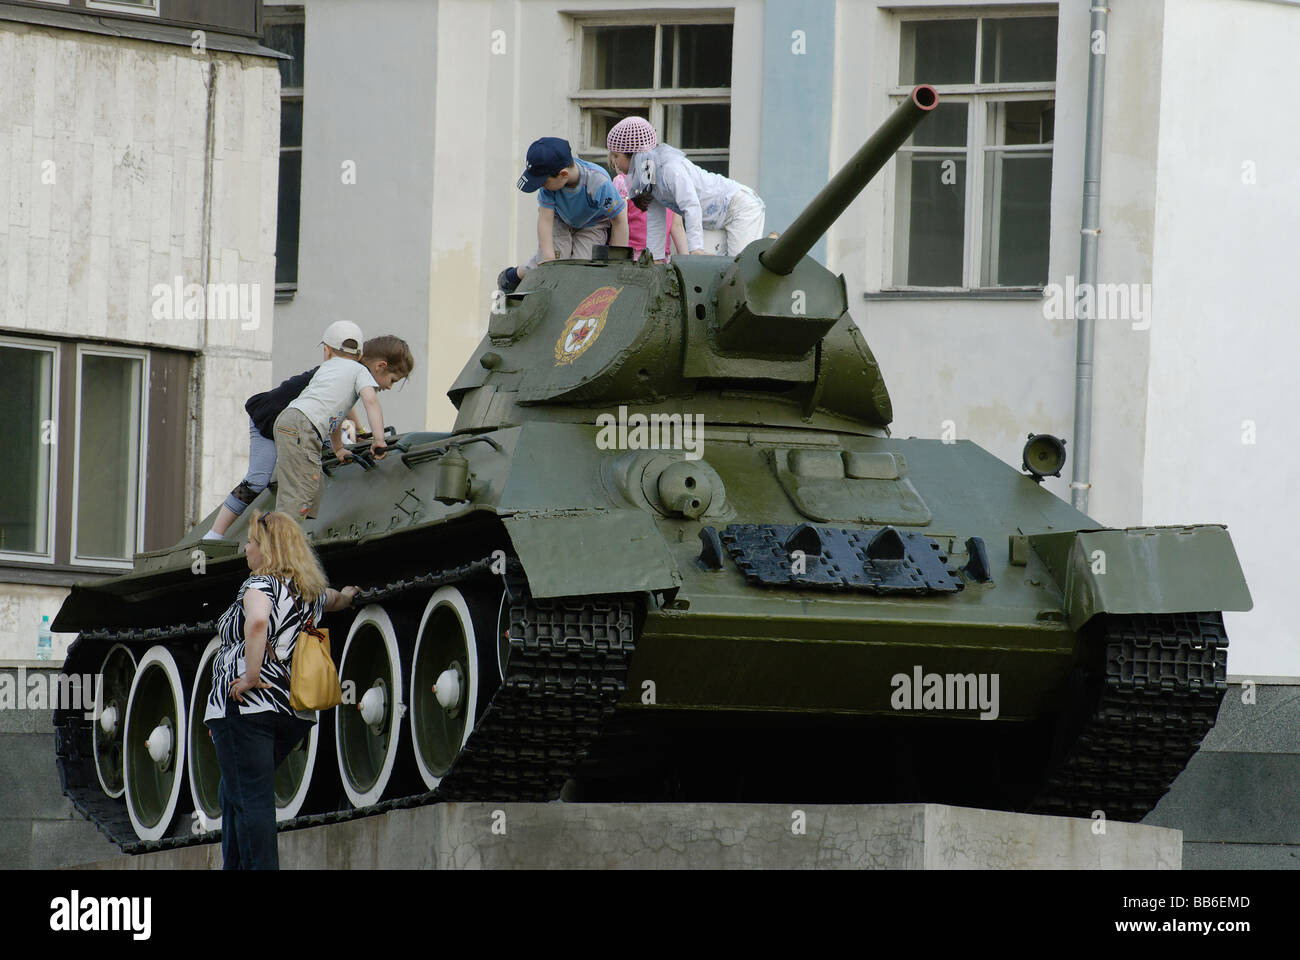 Sowjetischer Panzer T-34 und Kinder darauf Stockfotografie - Alamy